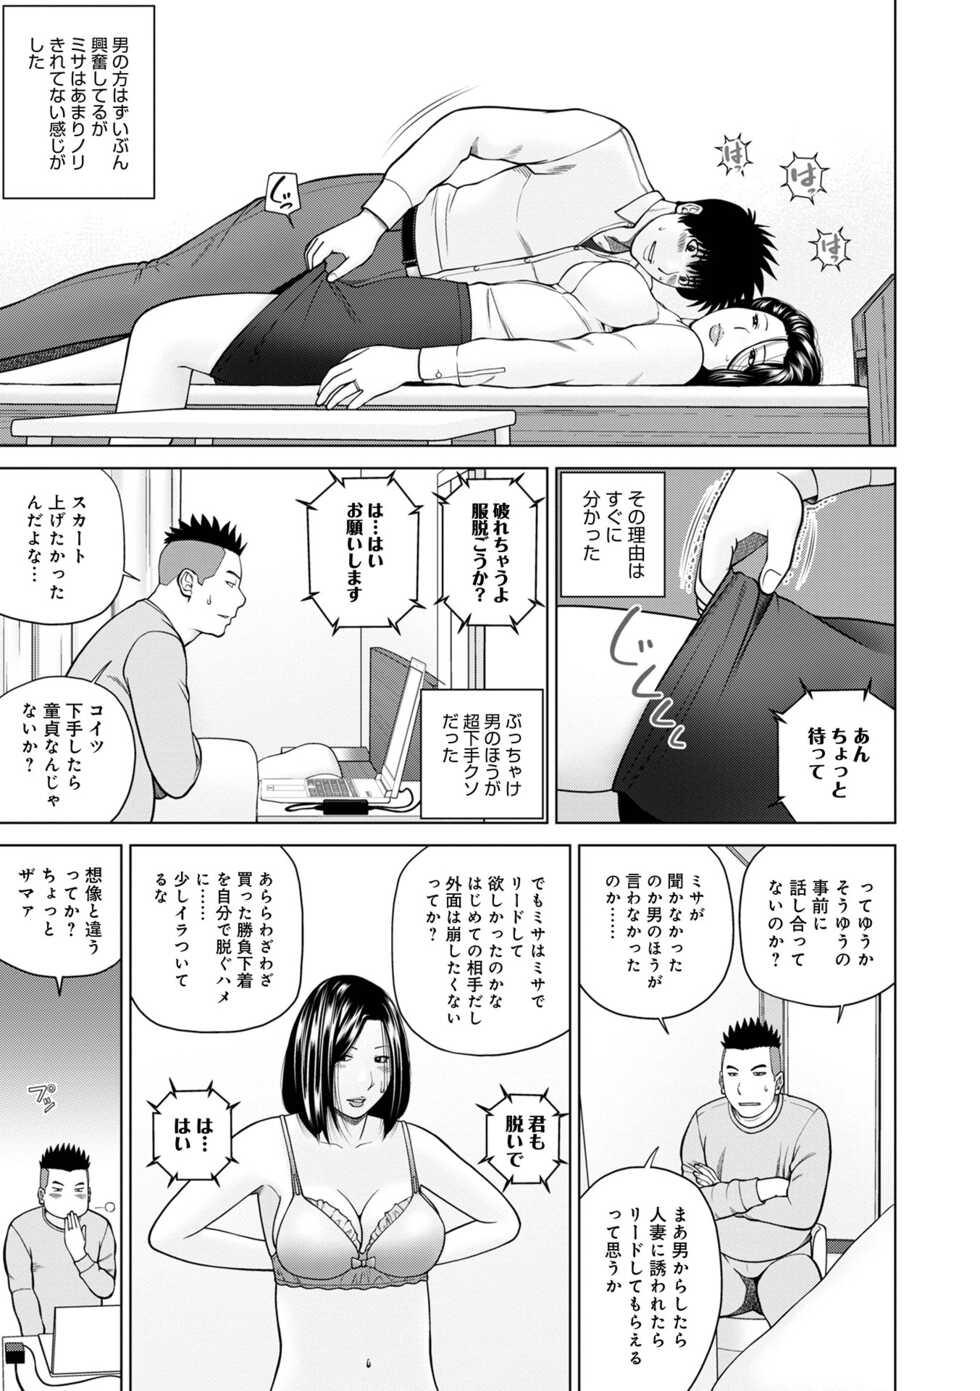 [Anthology] WEB Ban COMIC Gekiyaba! Vol. 155 - Page 11